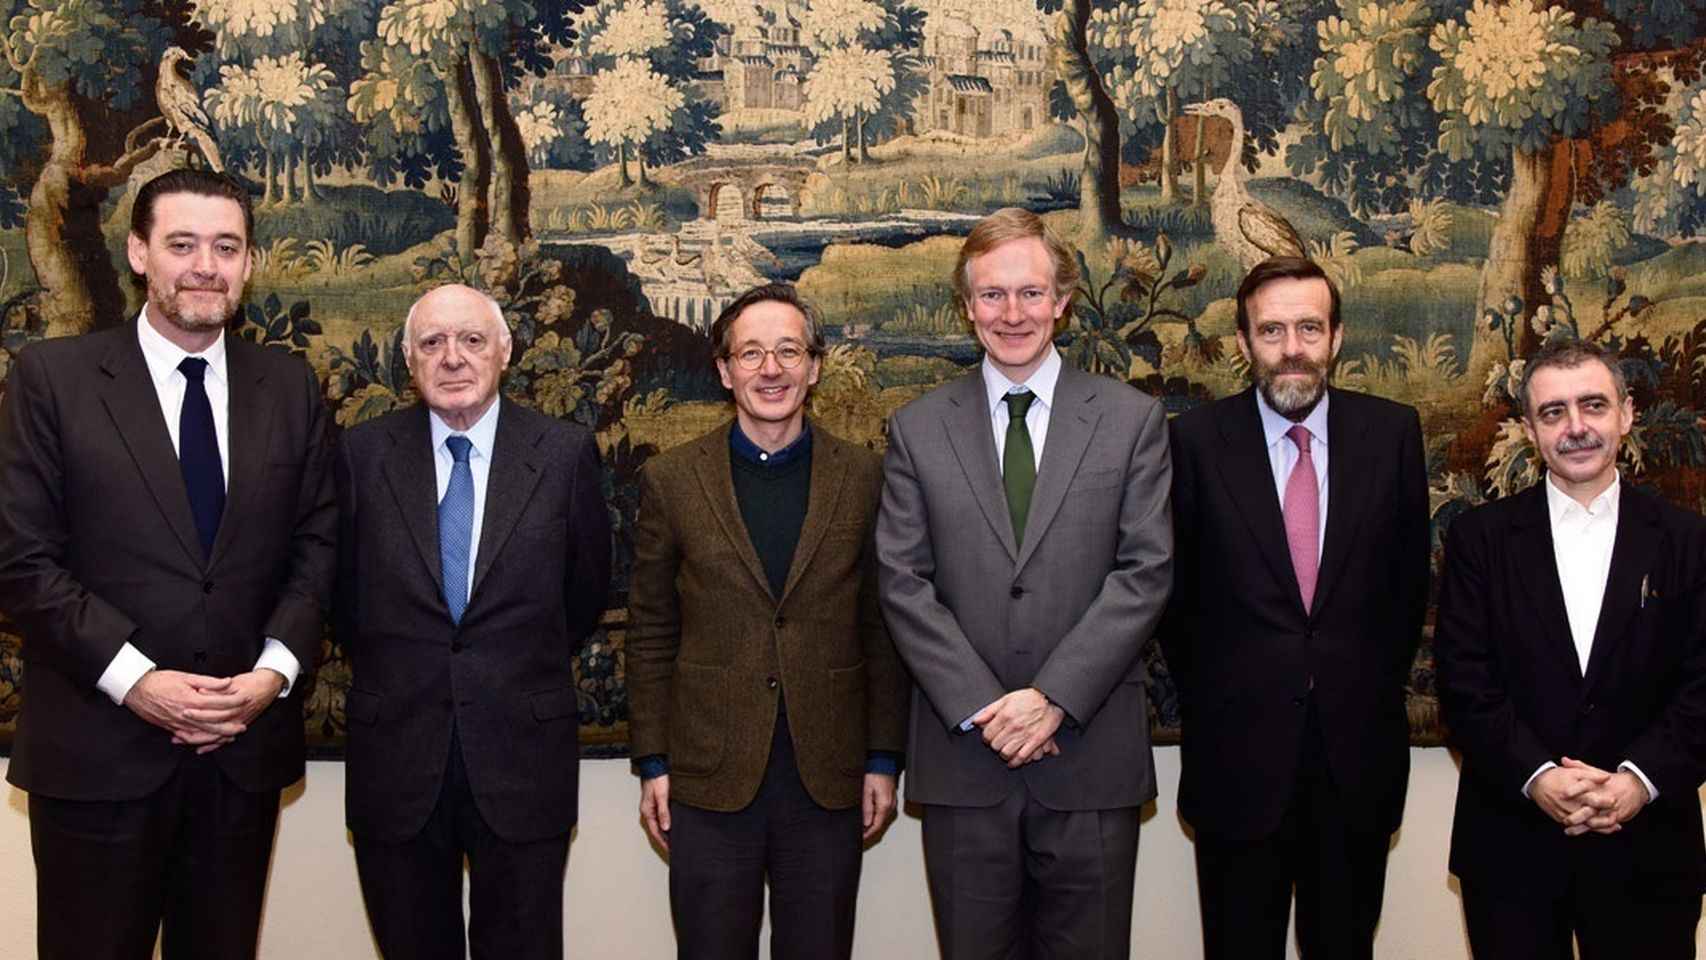 La cúpula del arte español. Una imagen de 2016, que podría volver a repetirse con el nuevo Gobierno.